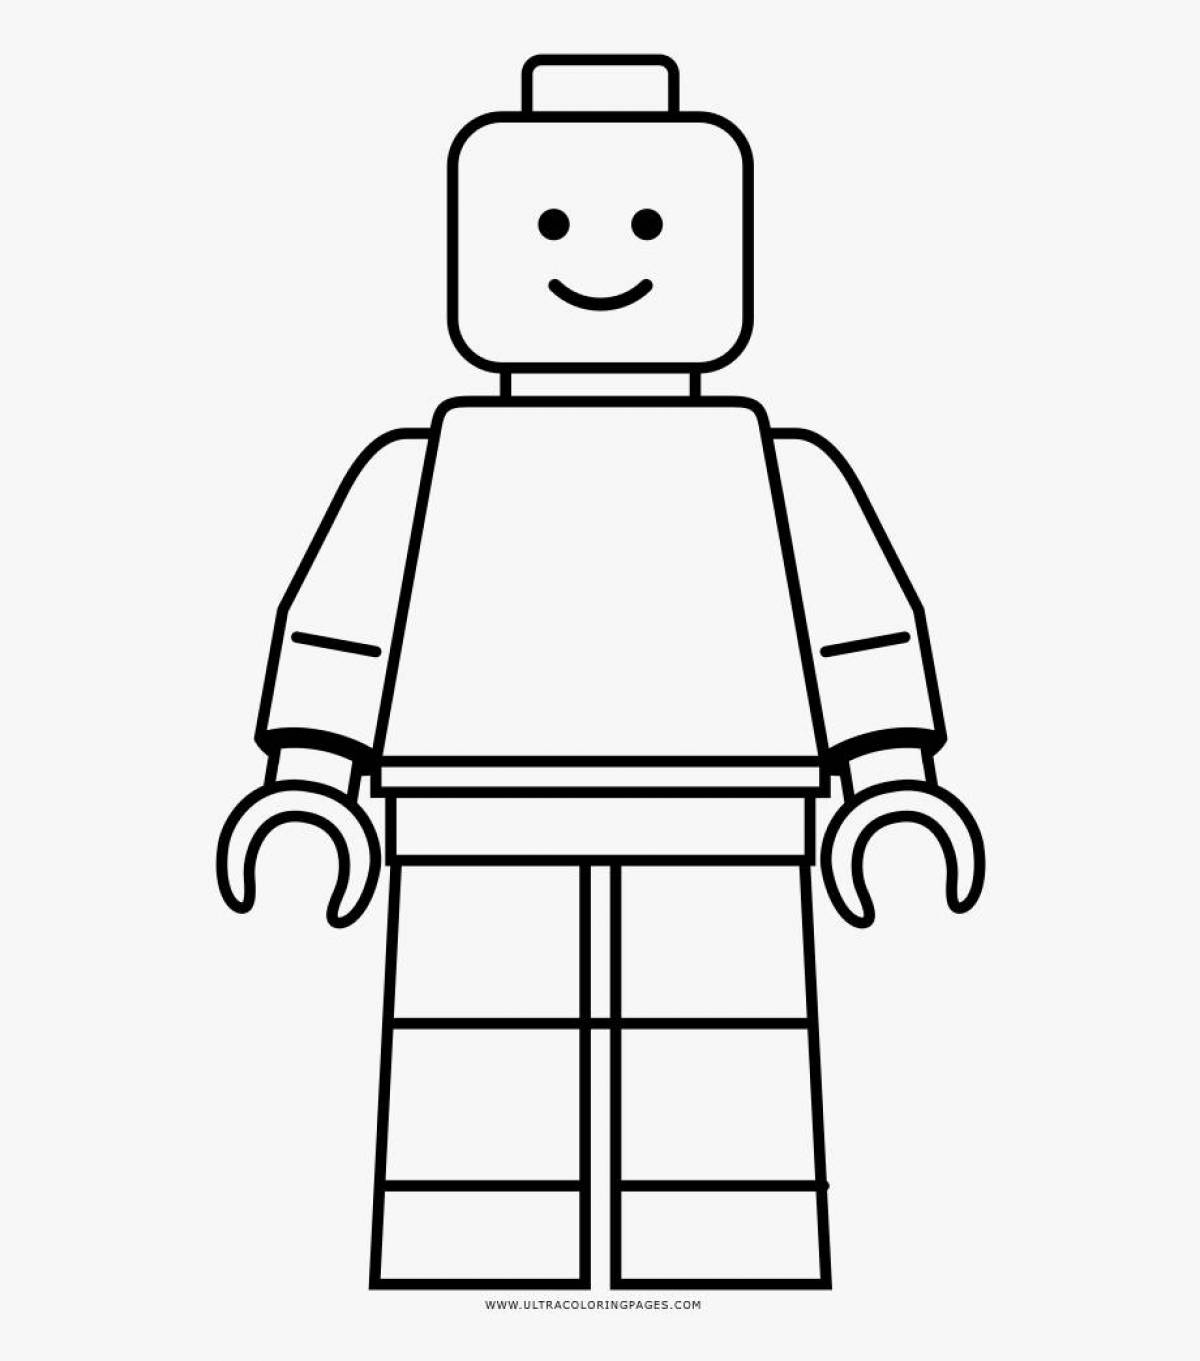 Lego men #5